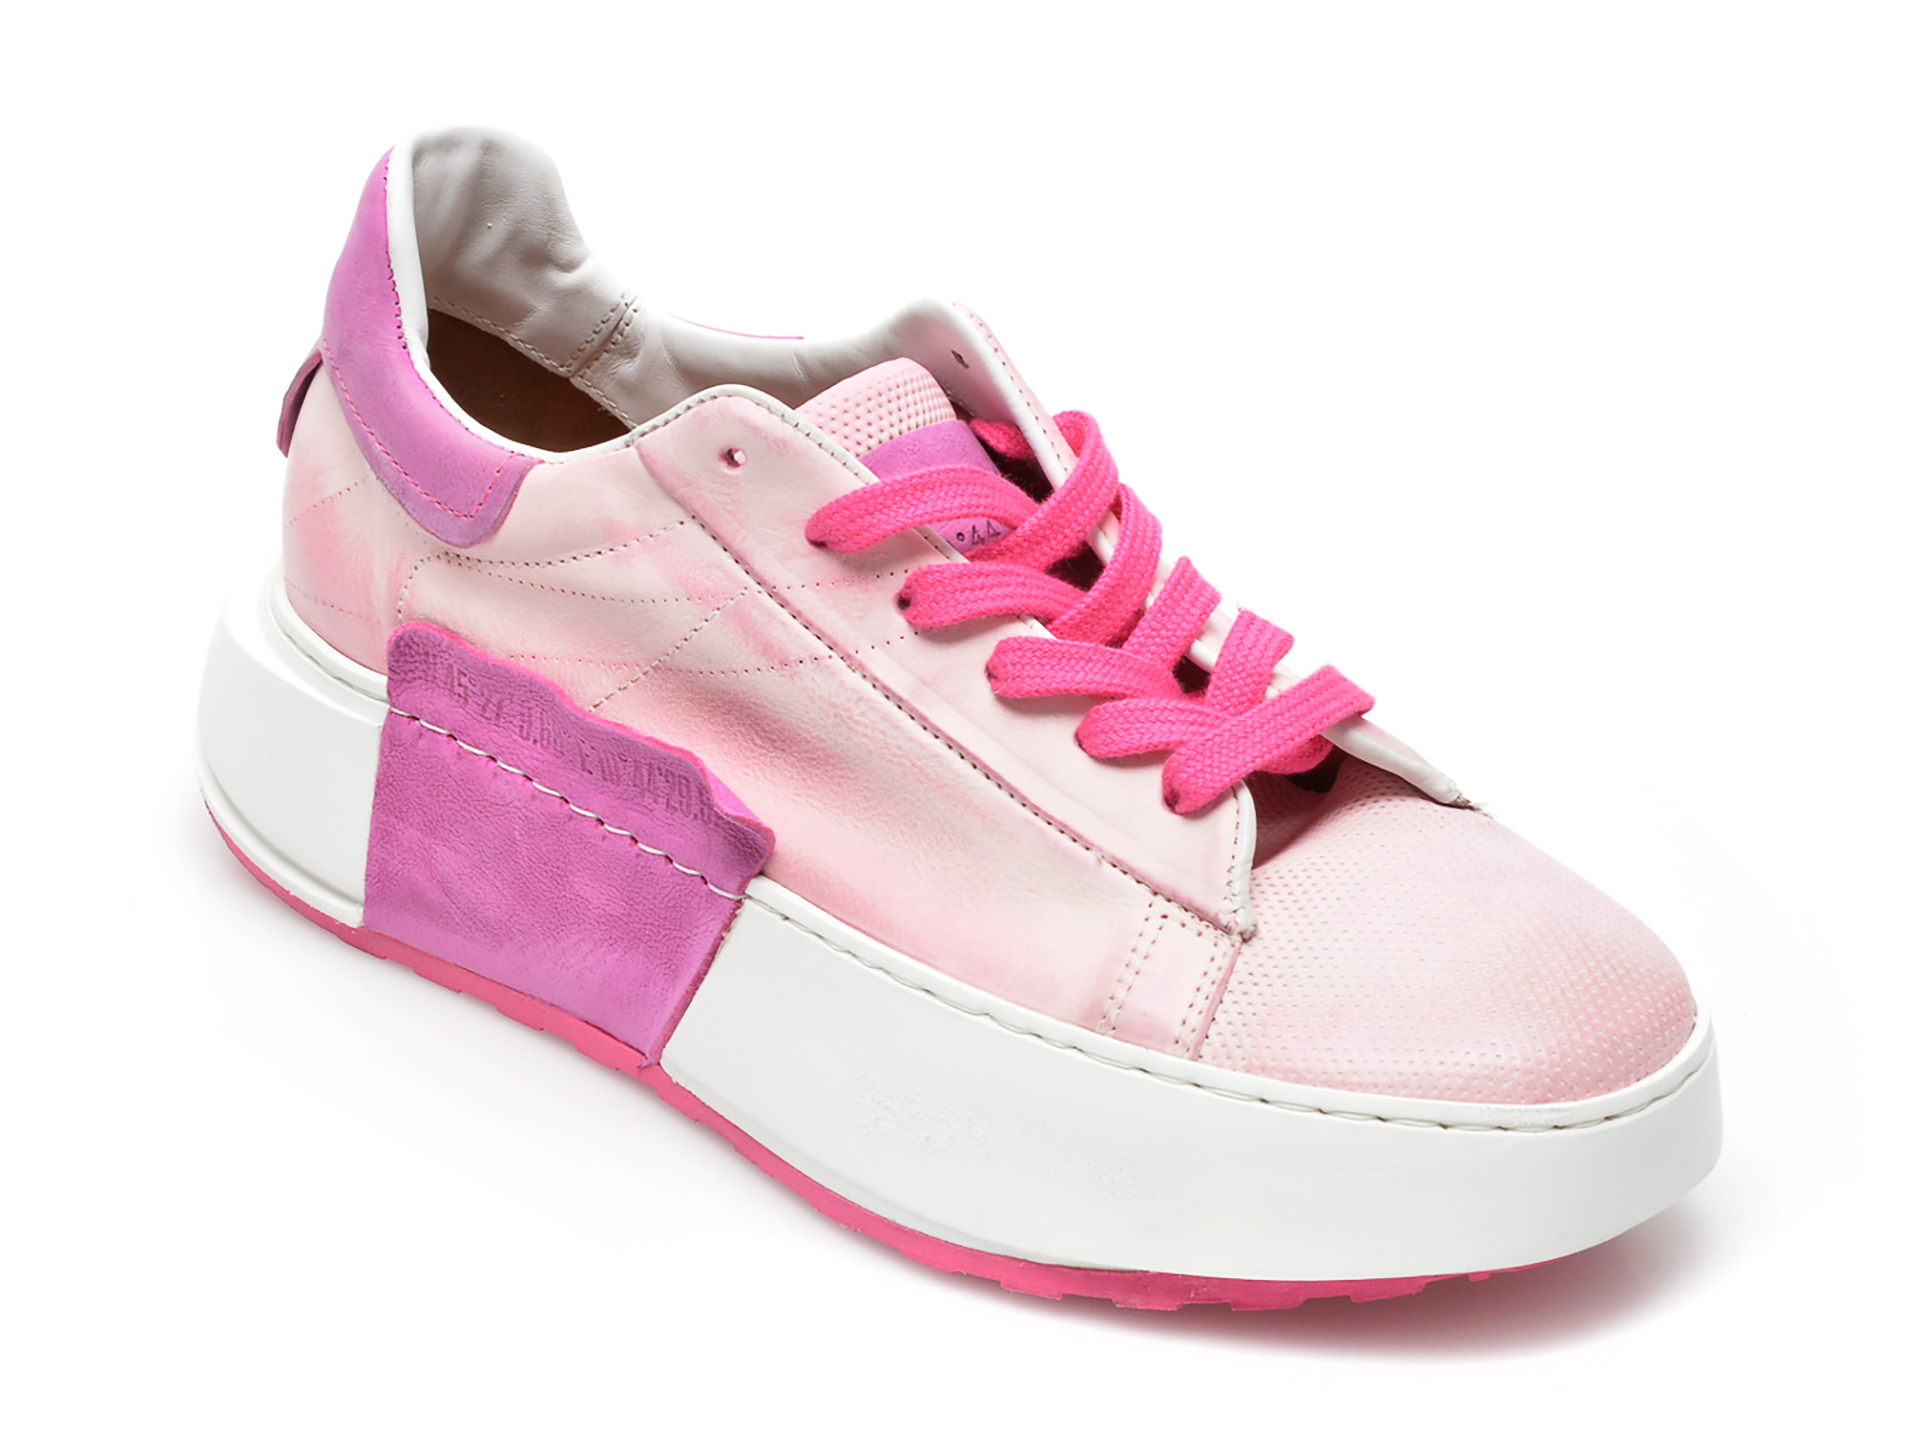 Pantofi sport A.S. 98 roz, A87101, din piele naturala 2022 ❤️ Pret Super tezyo.ro imagine noua 2022